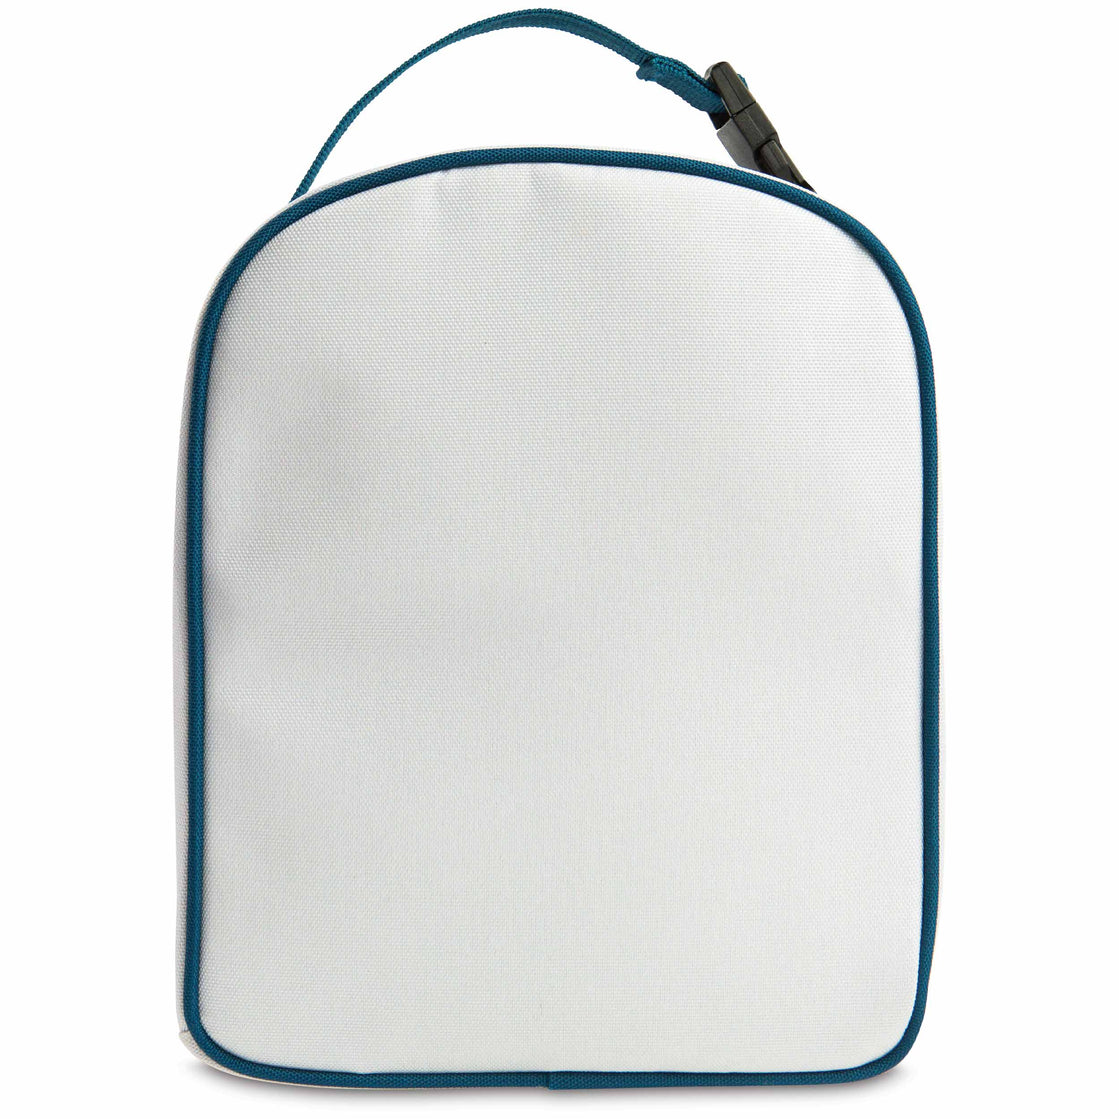 Avis Lunch Bag Campingaz 7L : 2 boites hermétiques + Freez Pack Small